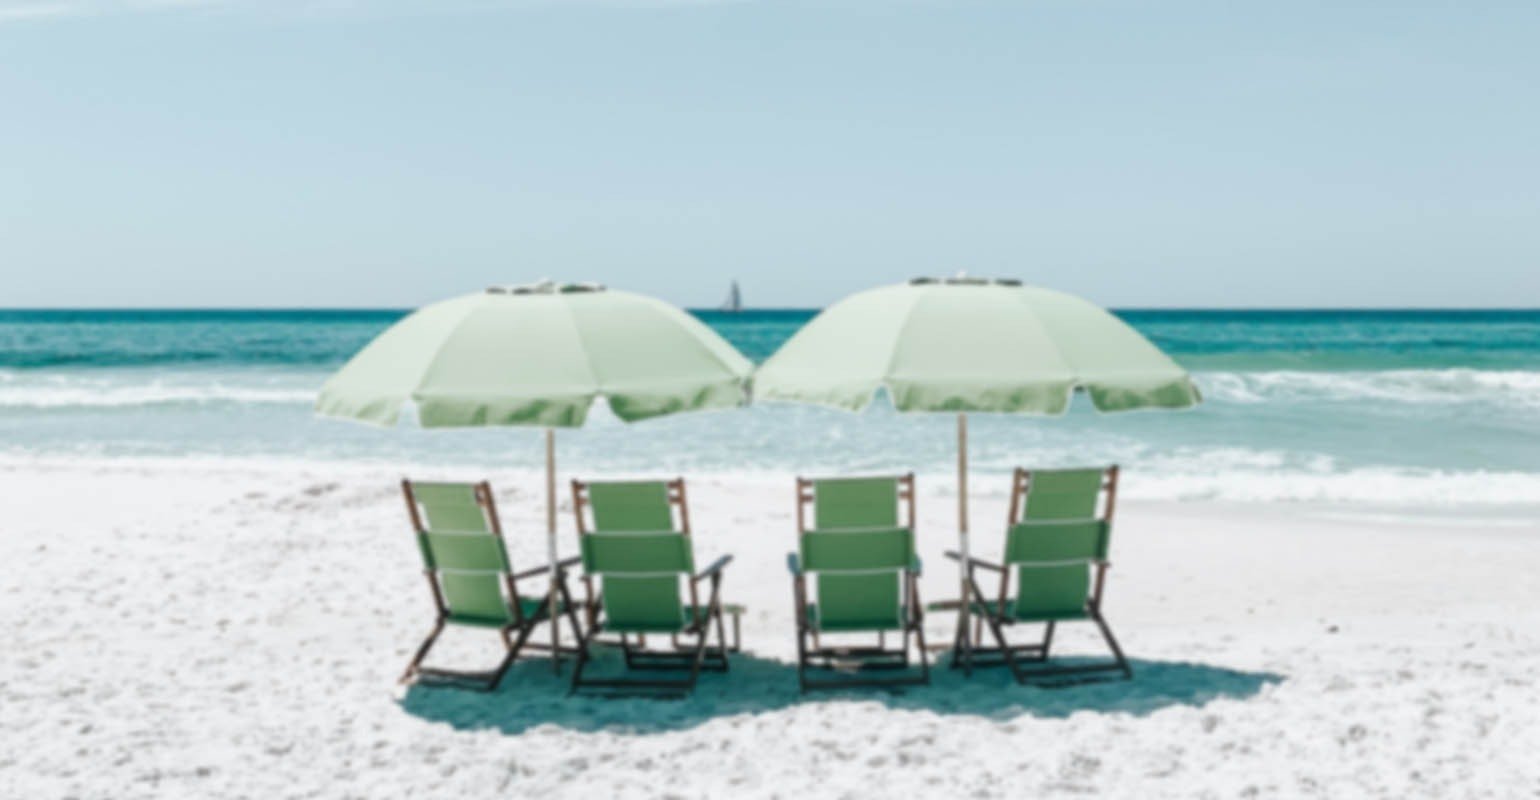 Sebuah foto buram kursi hijau di bawah payung di atas pasir pantai